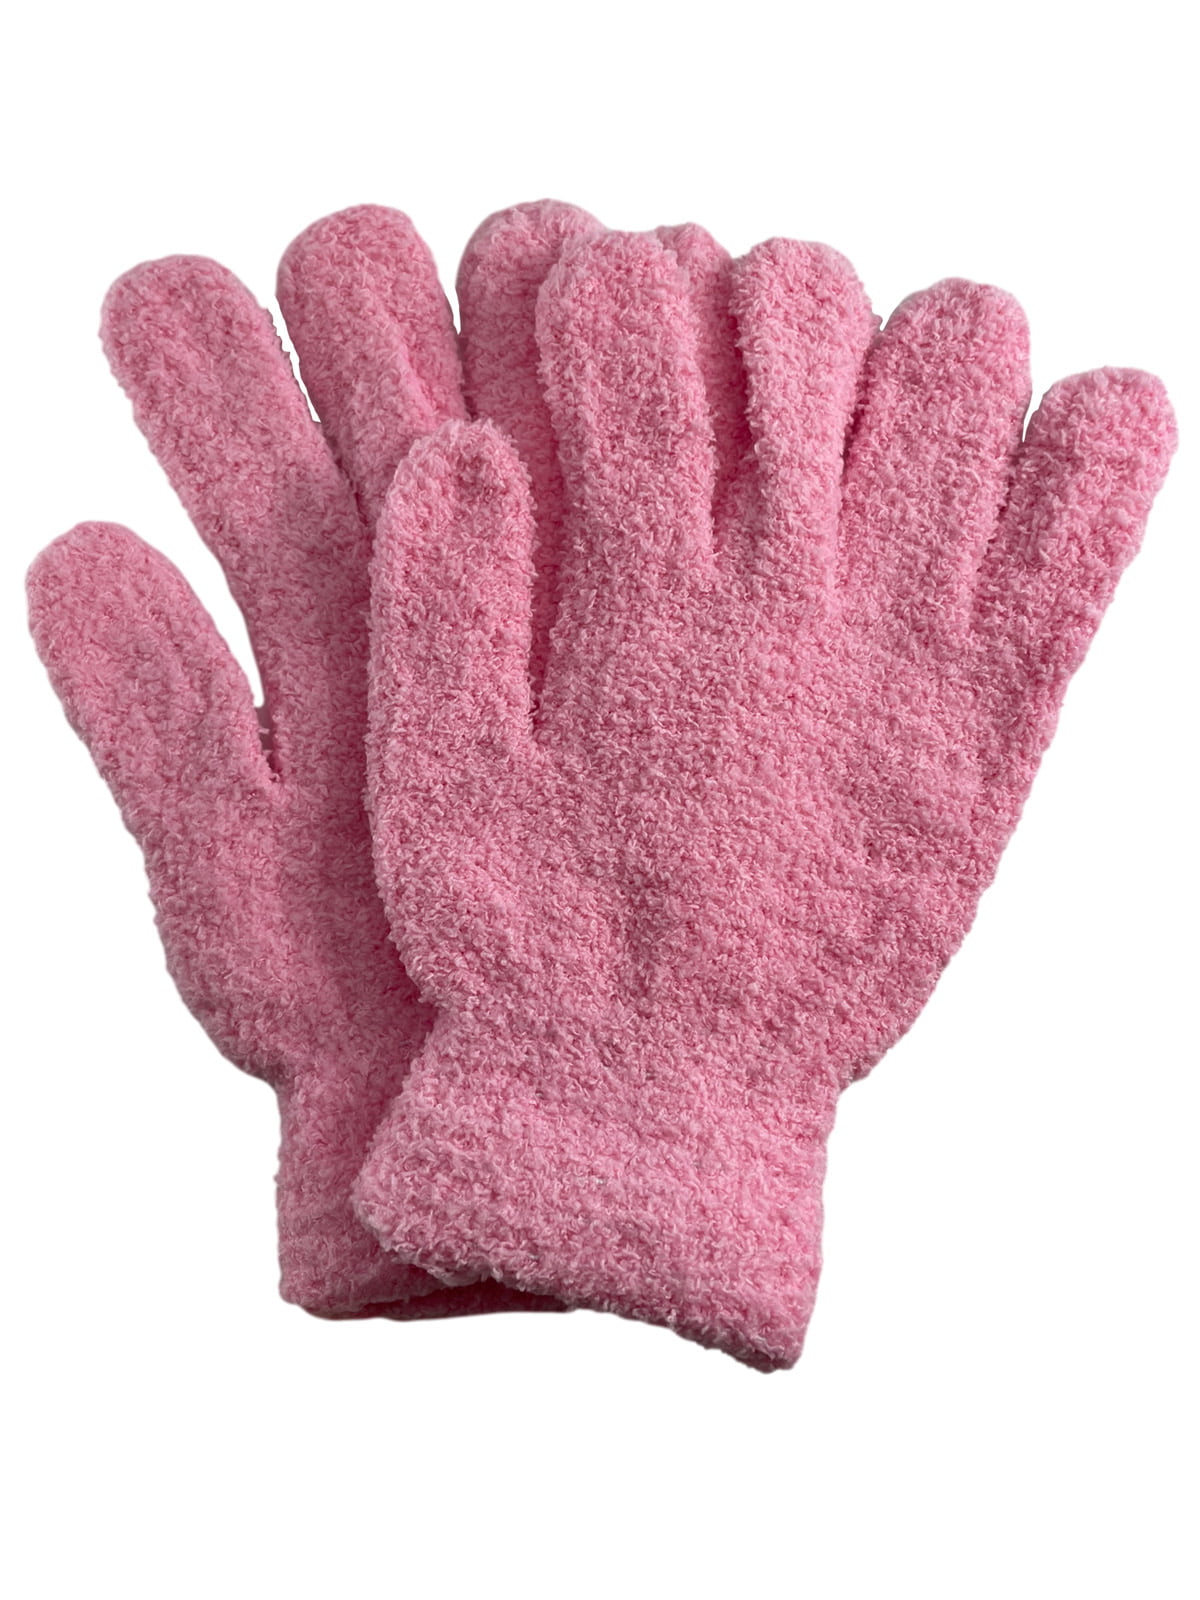 NEW Ladies Girls Gloves Soft Winter Wear Pink Gift Snow Ice Womens Warm Hands 